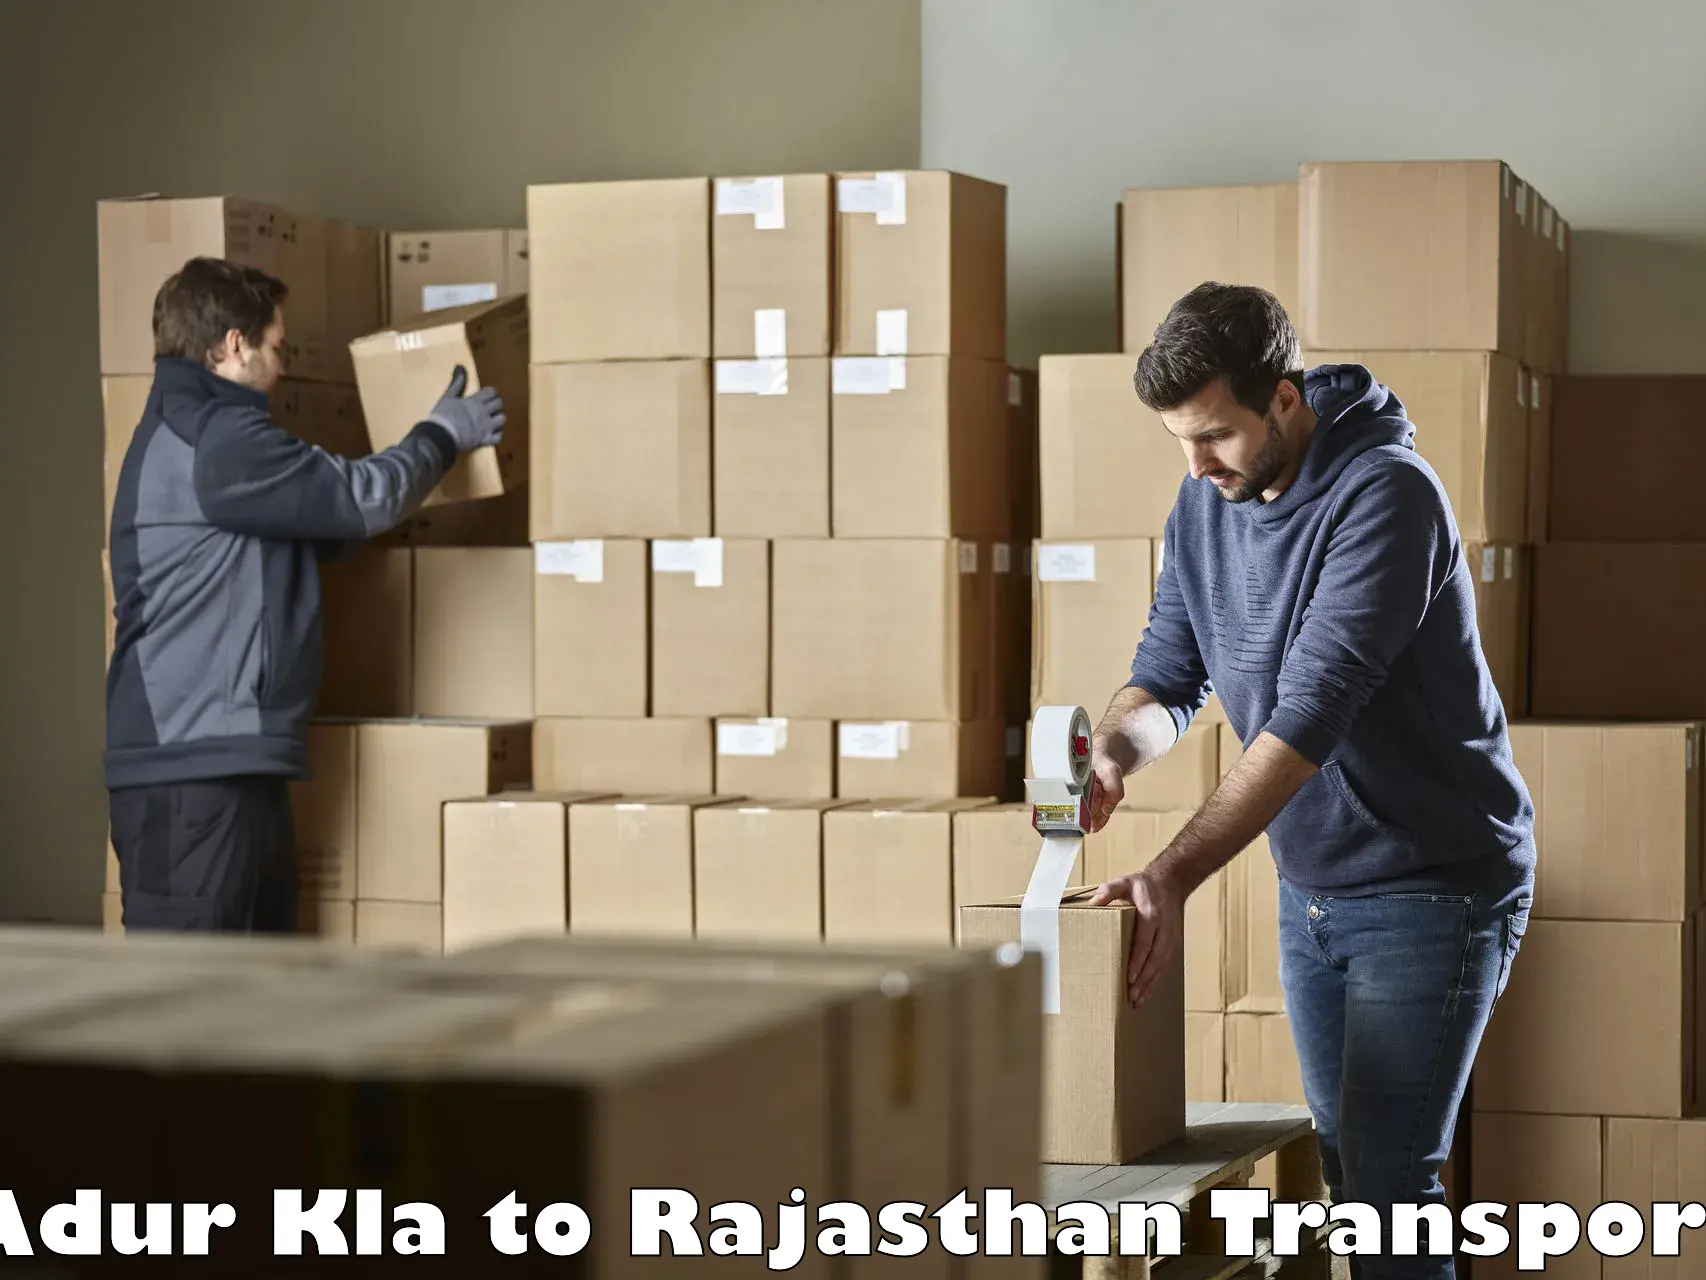 Land transport services Adur Kla to Rajasthan